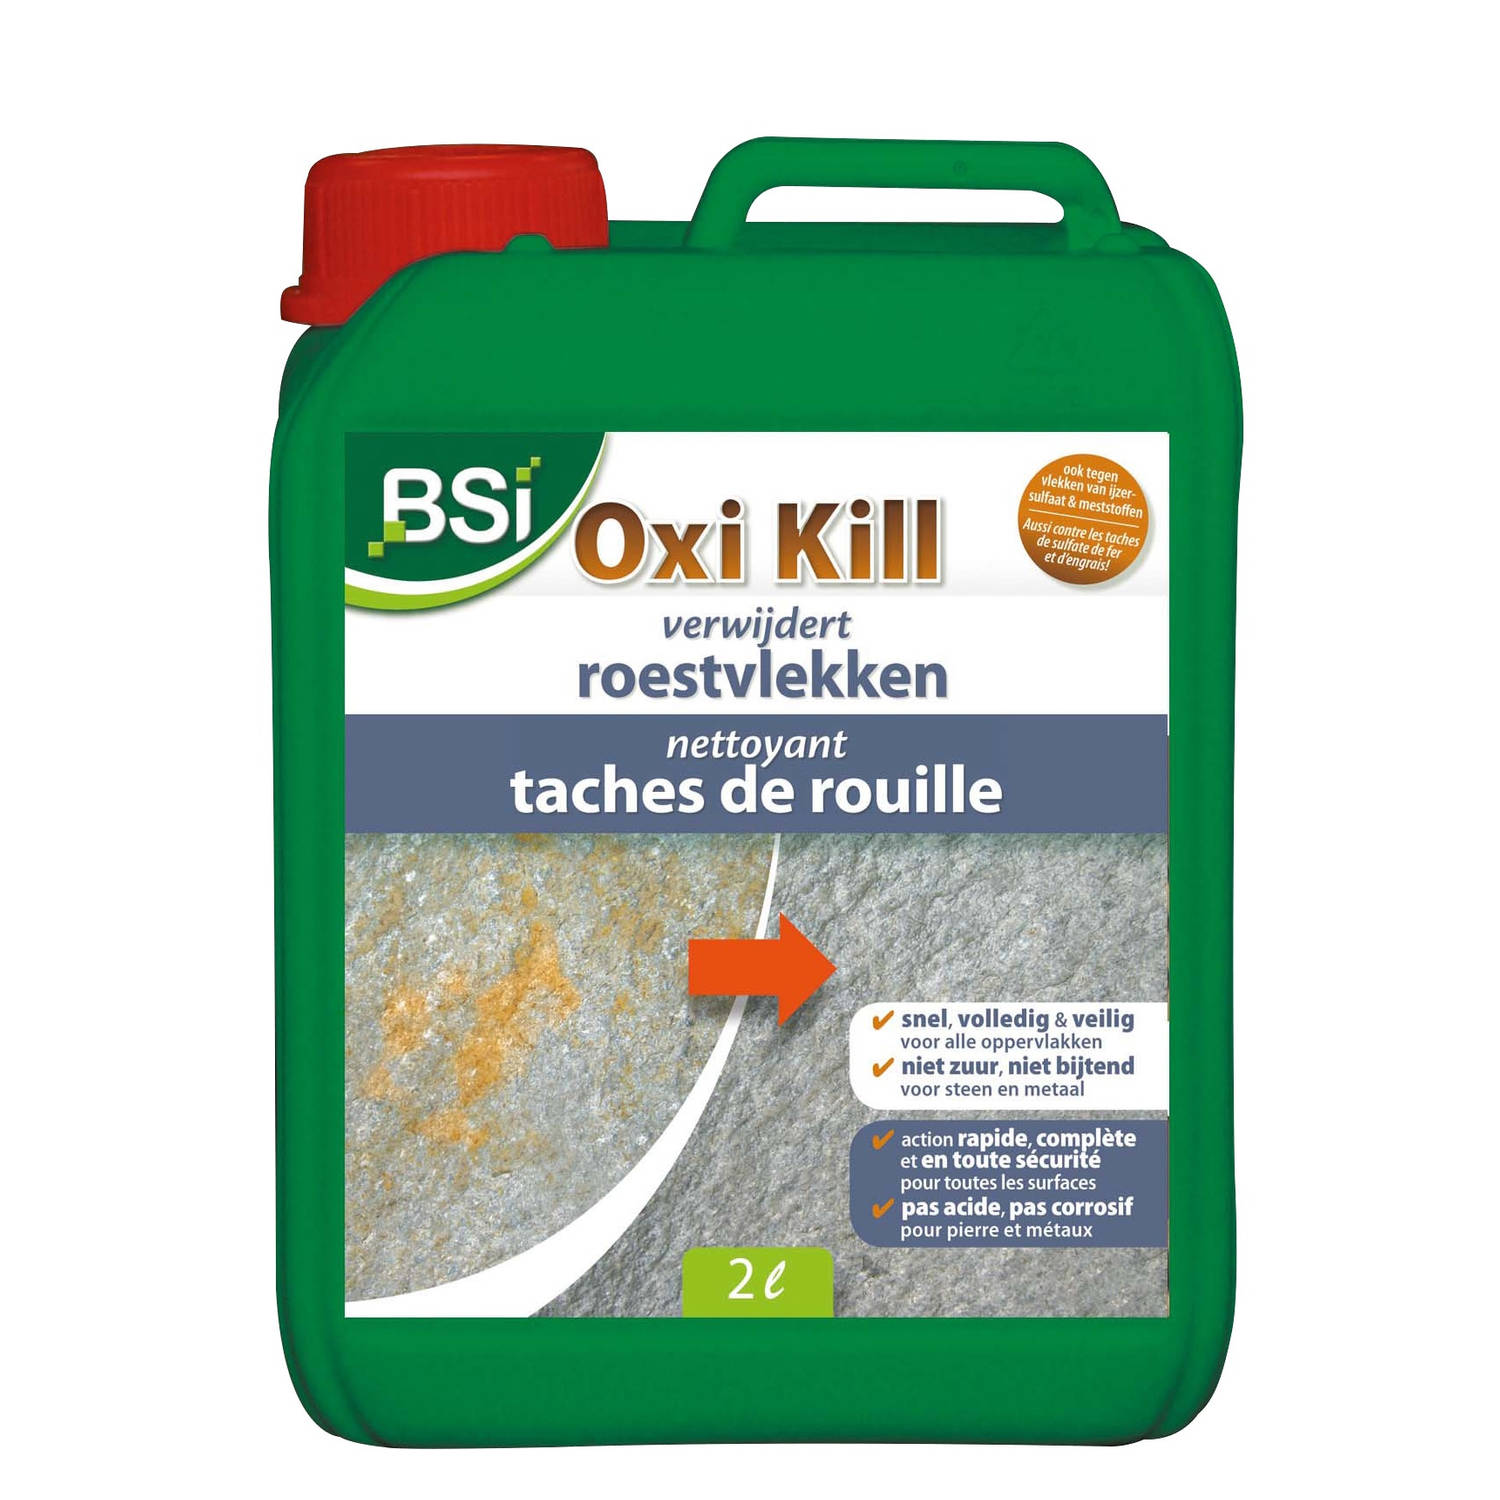 BSi roestvlekken verwijderaar Oxi Kill 2 liter groen